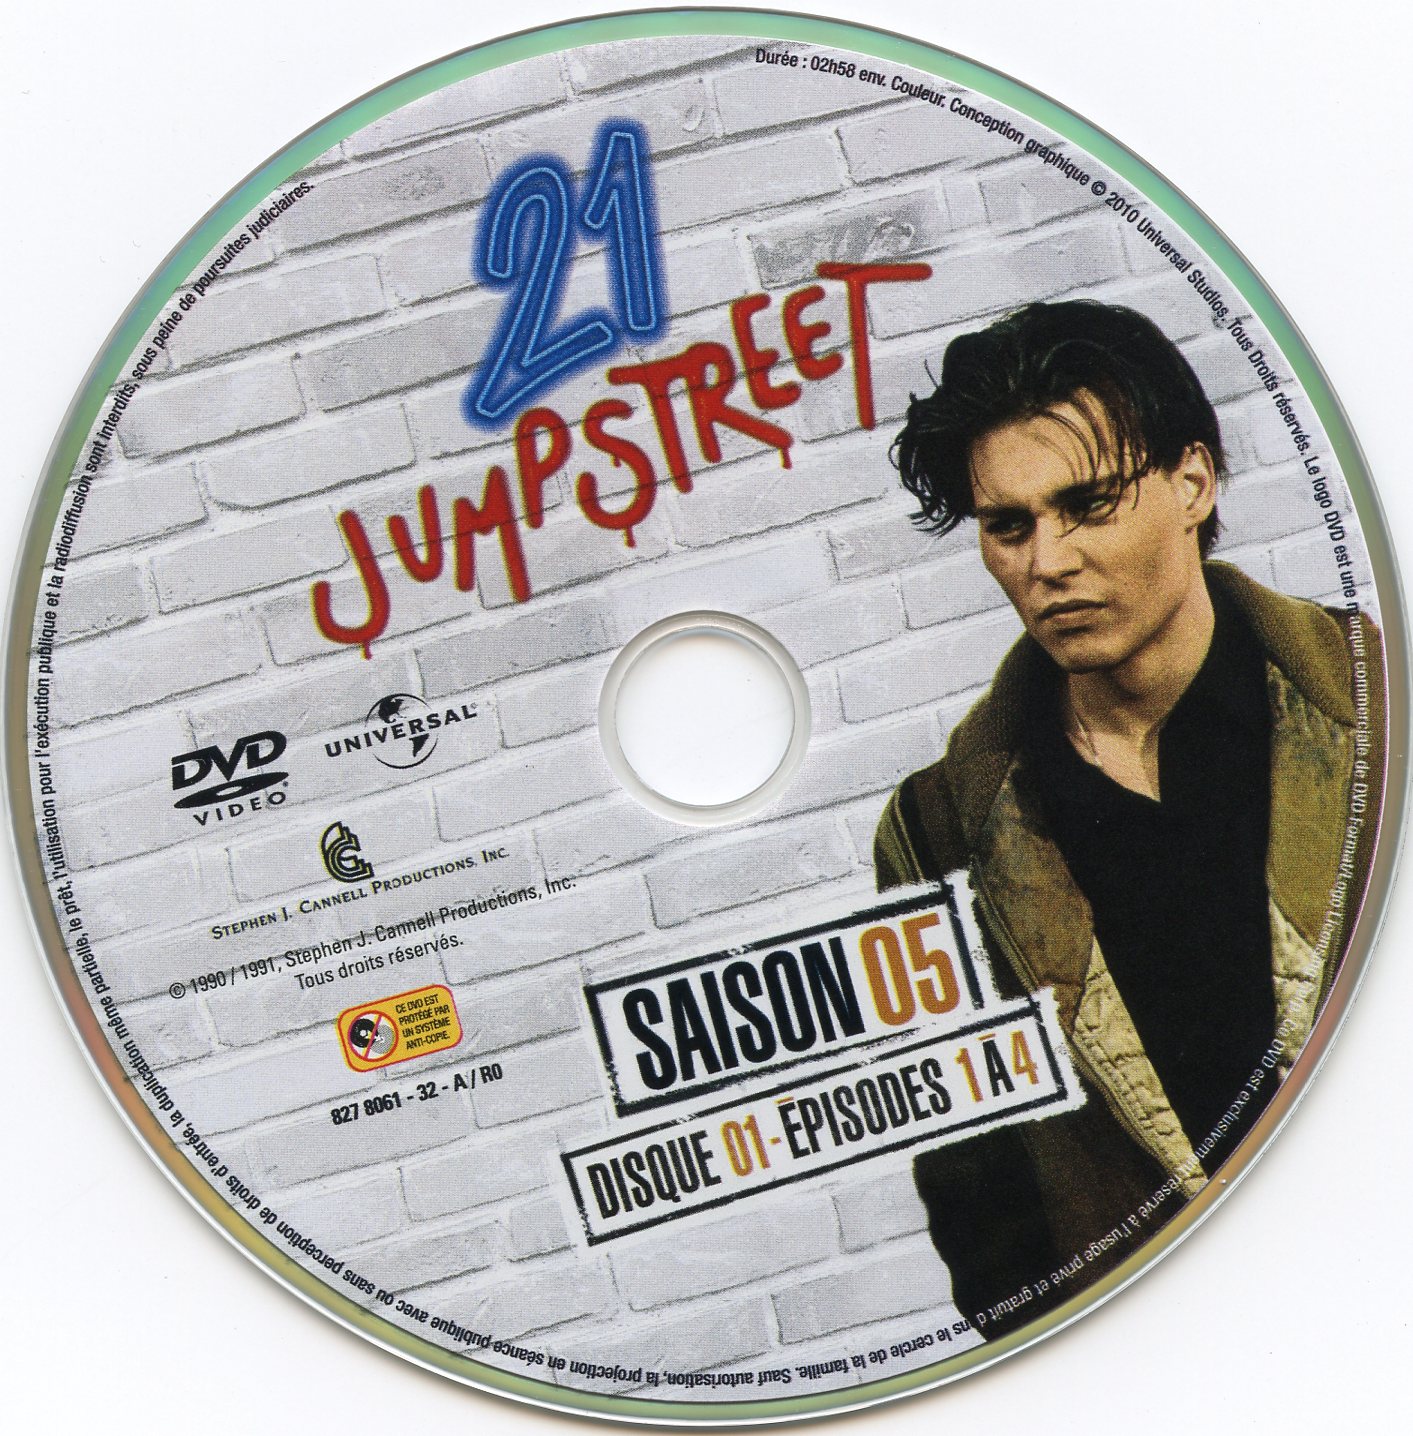 21 jump street Saison 5 DVD 1